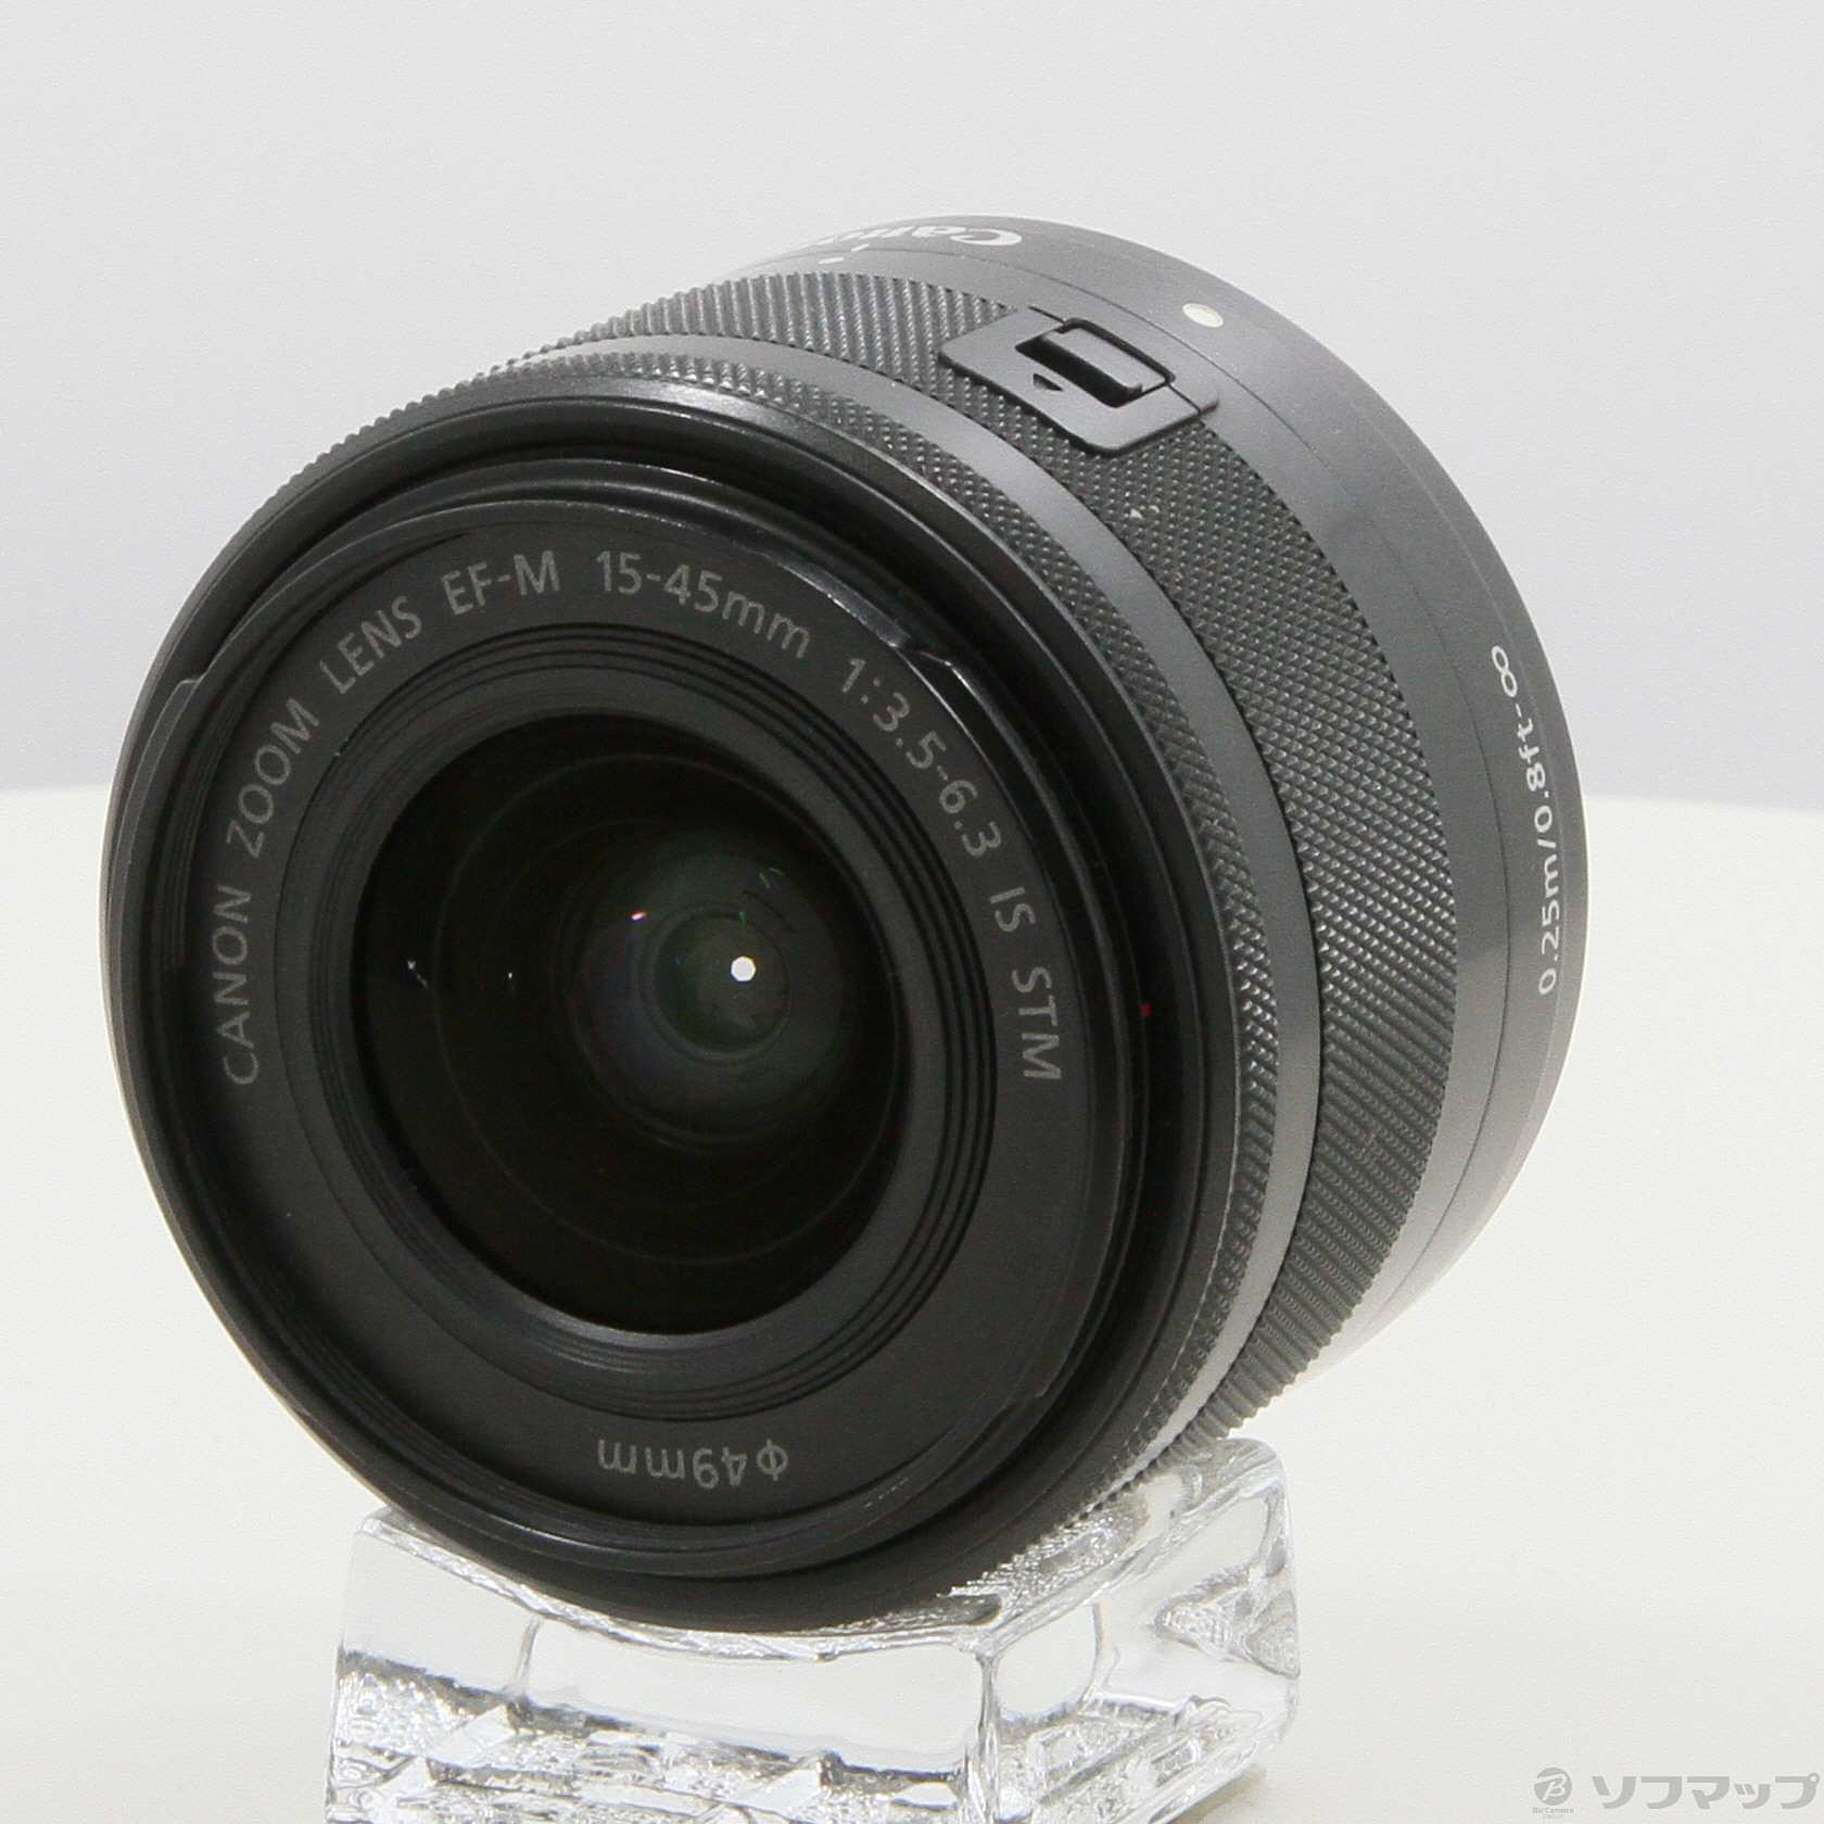 ランキングTOP10 Canon キヤノン EF-M 15-45mm F3.5-6.3 IS STM グラファイト ※中古 